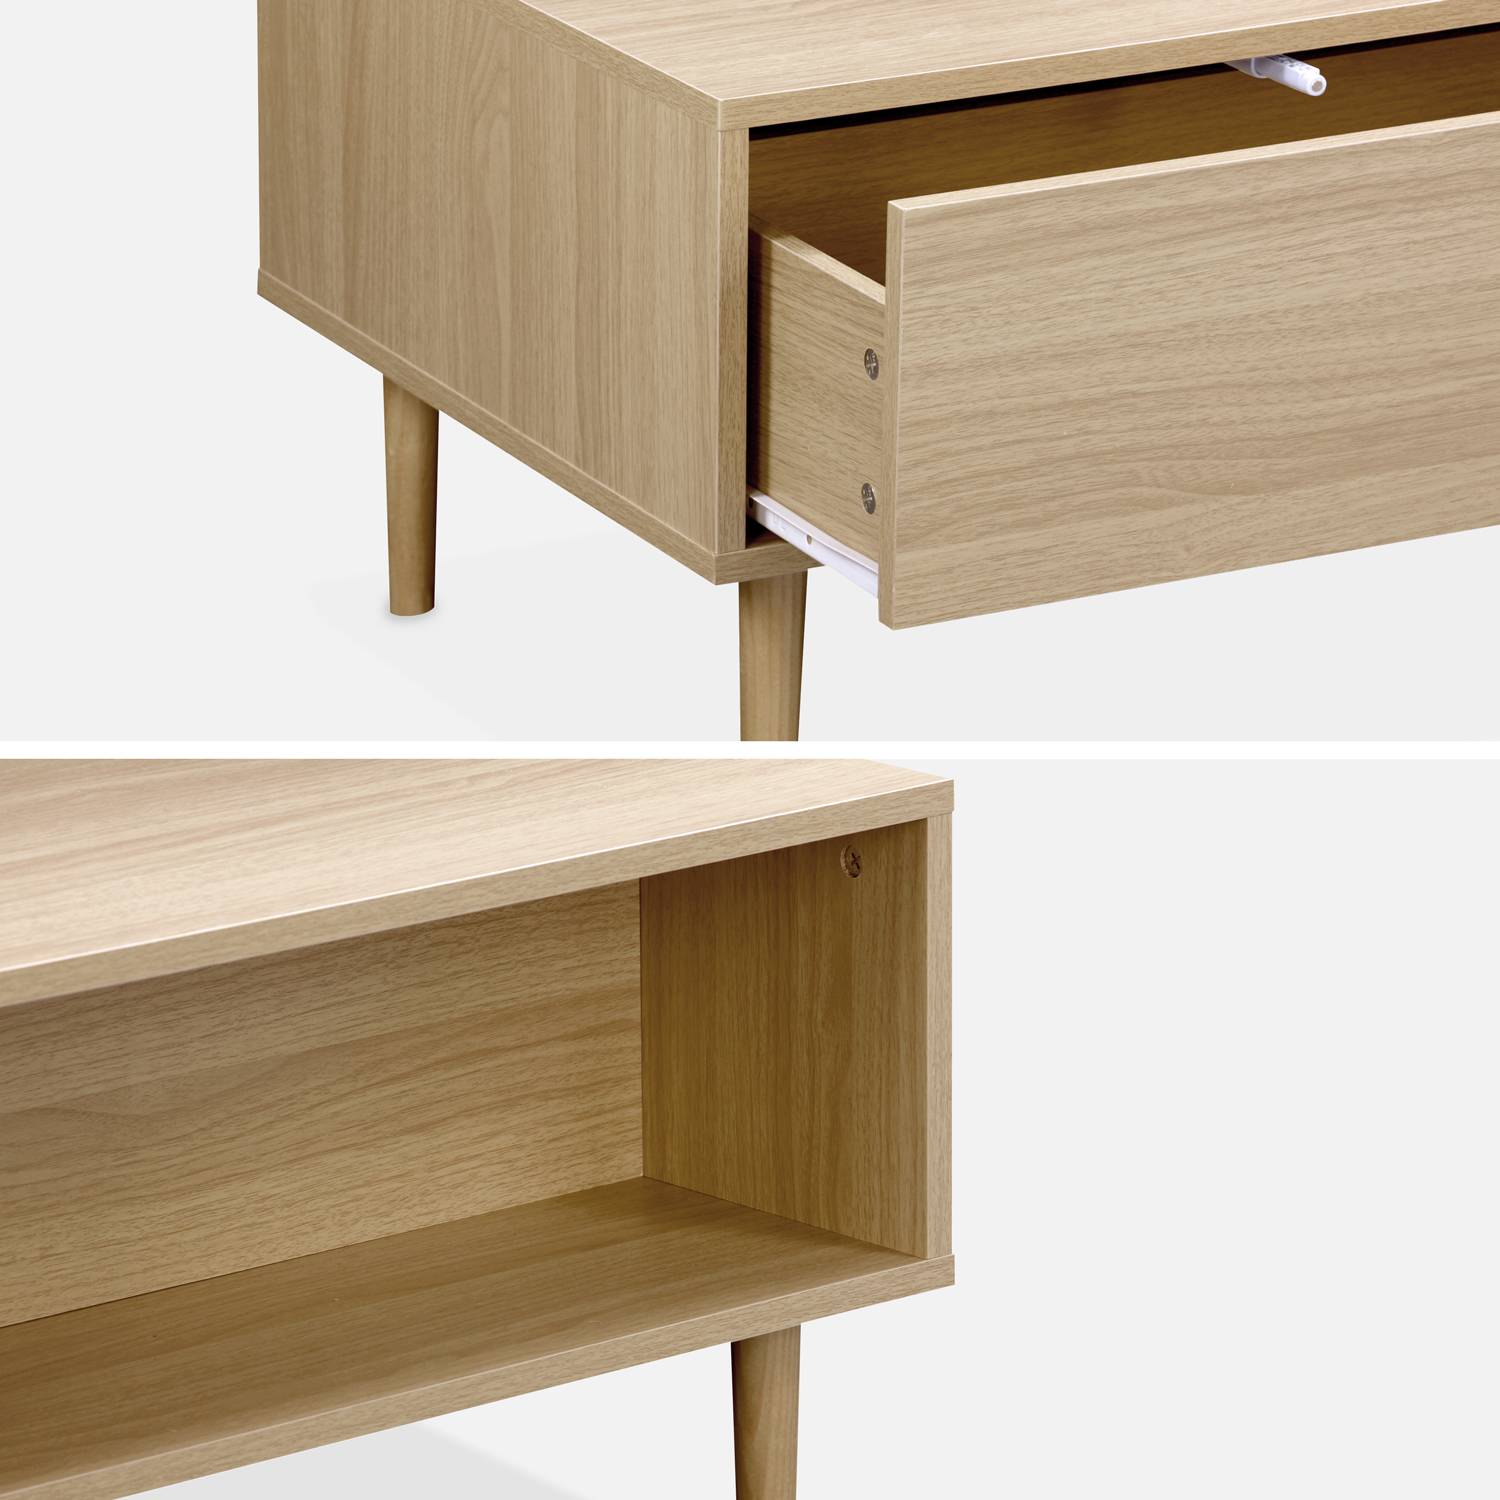 Table basse en décor bois - Mika - 2 tiroirs, 2 espaces de rangement, L 120 x l 55 x H 40cm Photo6